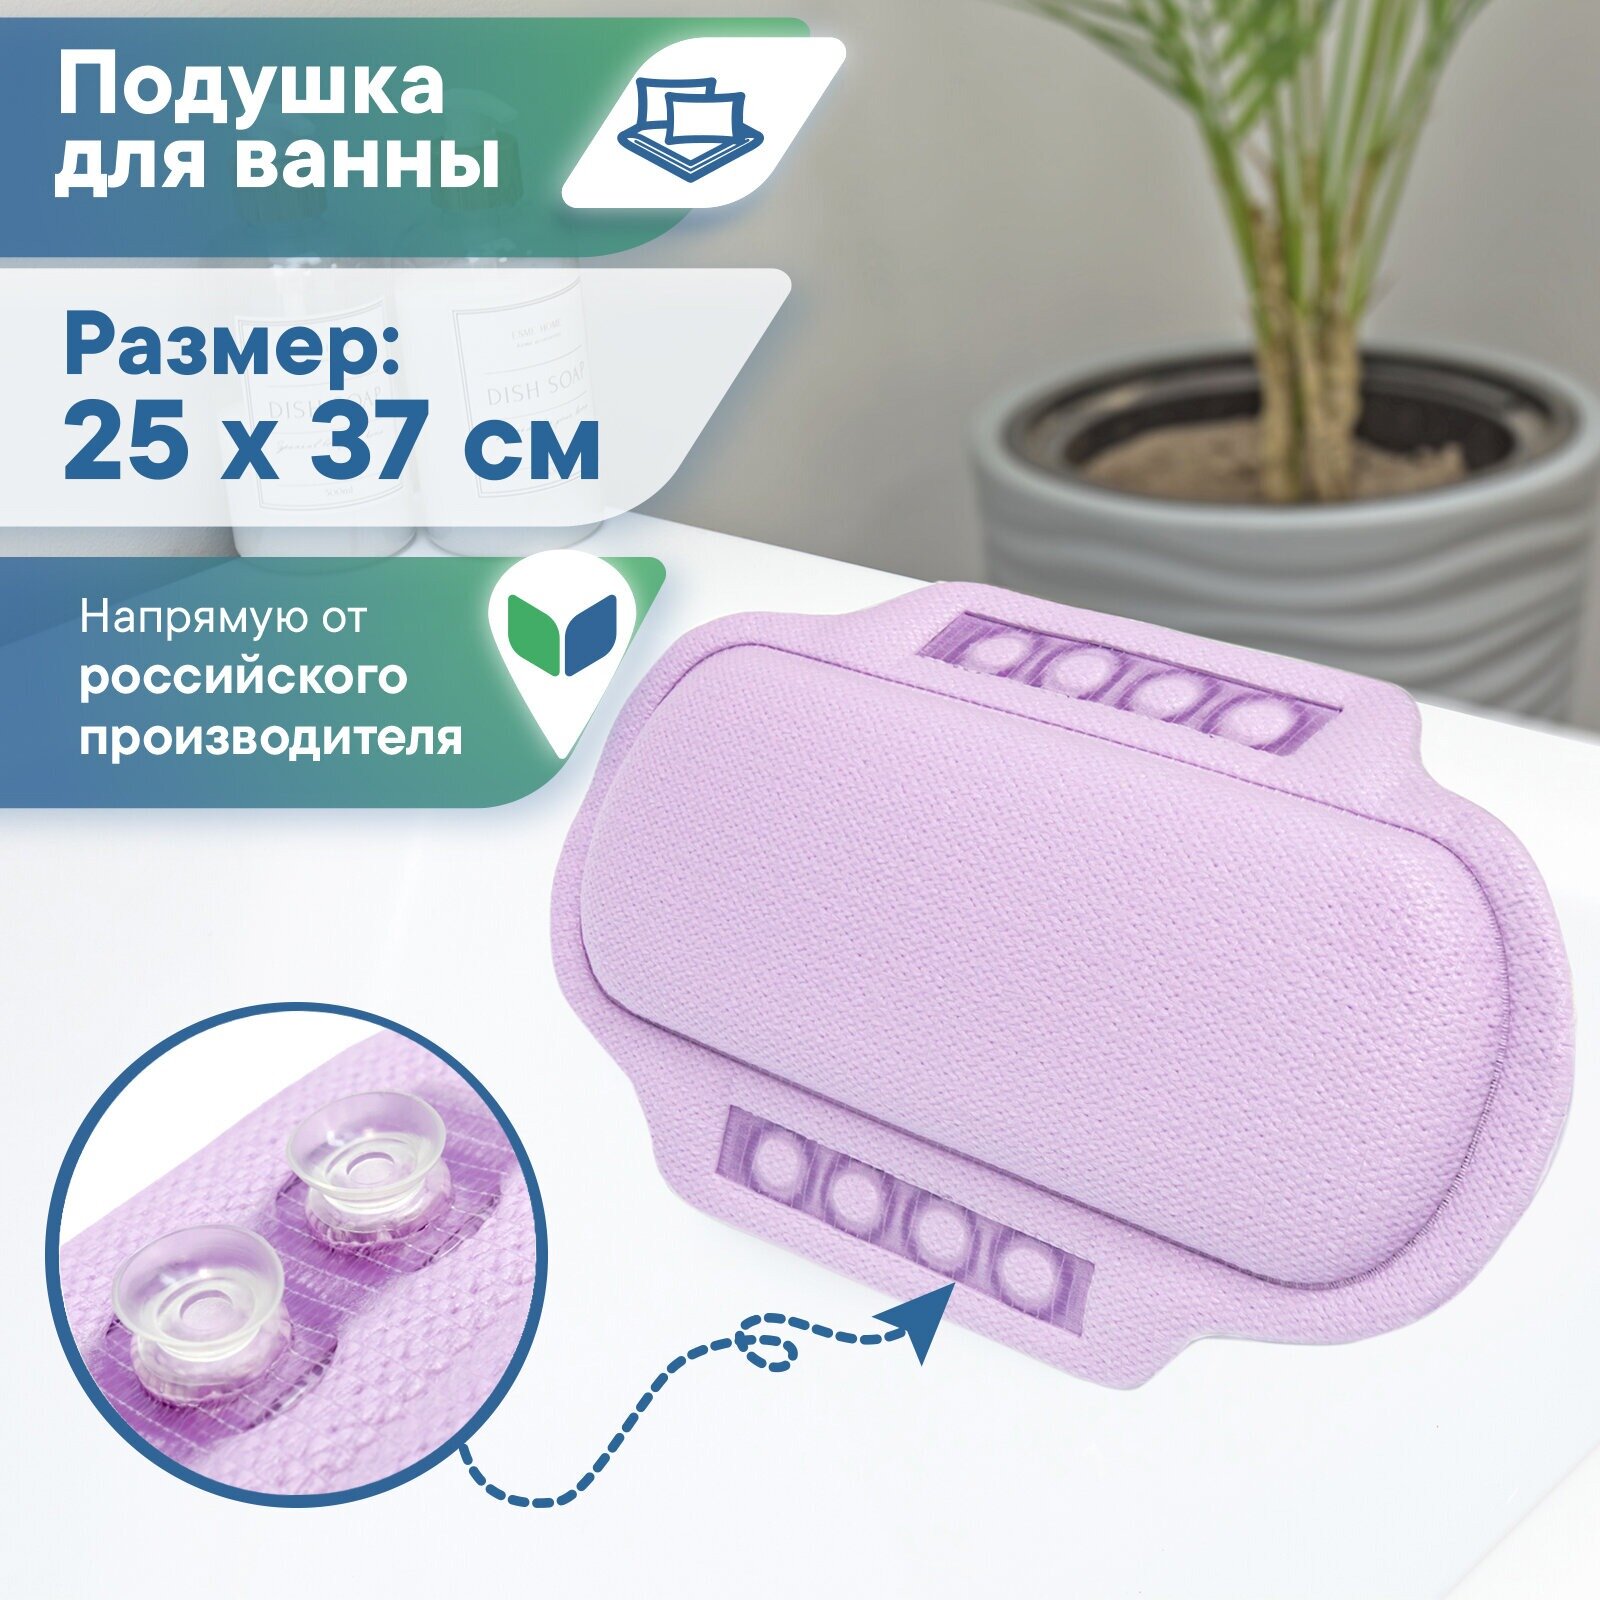 Подушка для ванны с присосками VILINA мягкая расслабляющая массажная подголовник 25х37 см Белая